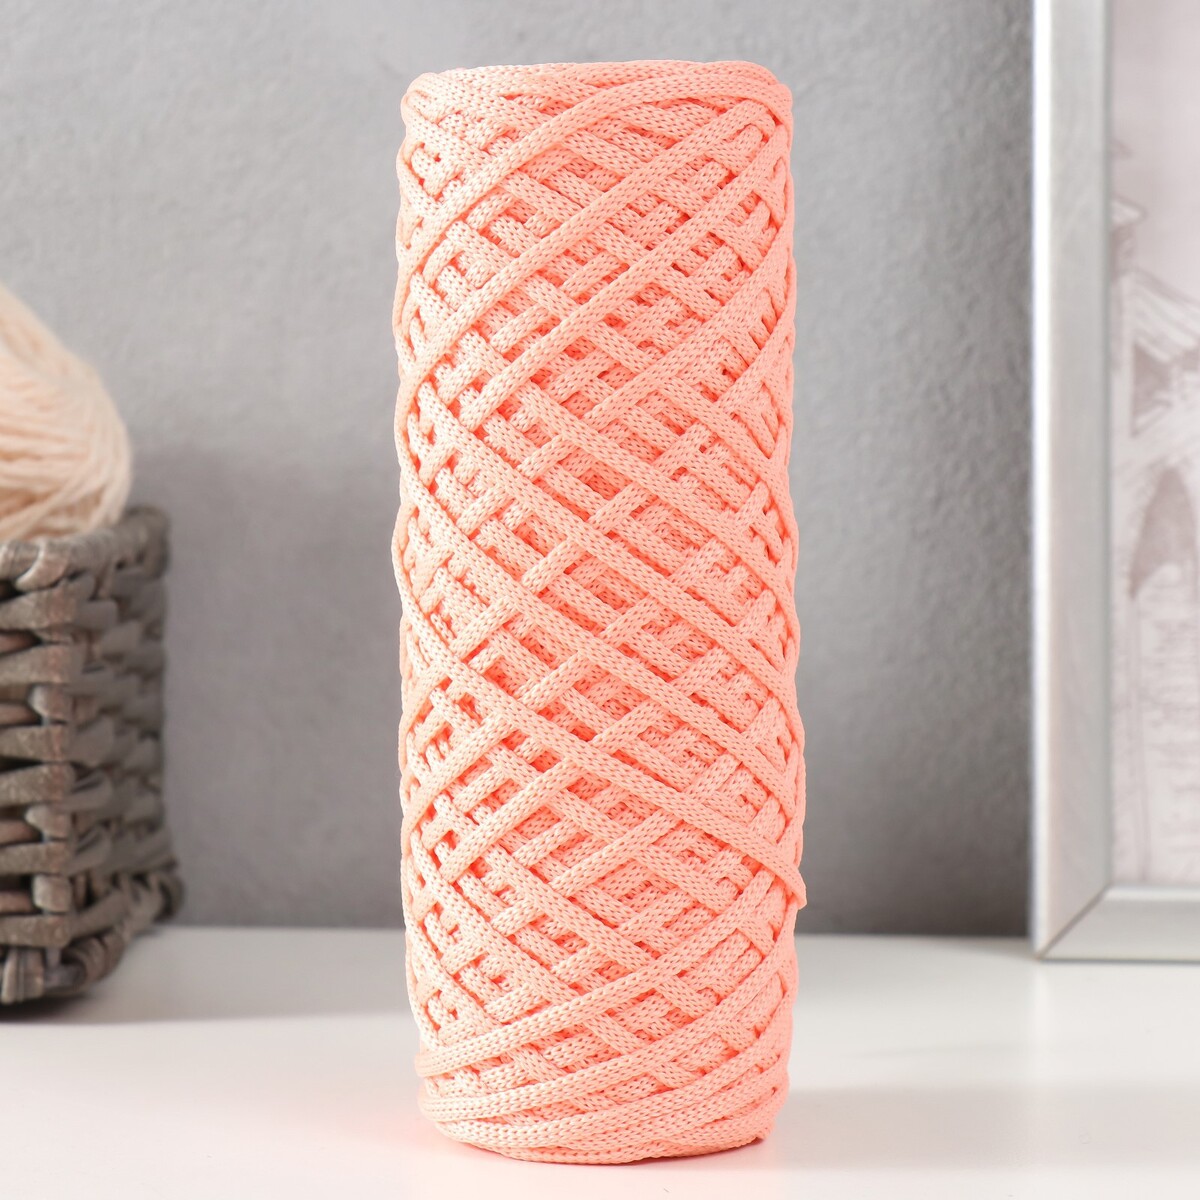 Шнур для вязания 100% полиэфир, ширина 3 мм 100м (розовый) шнур для вязания 100% полиэфир ширина 3 мм 100м розовый